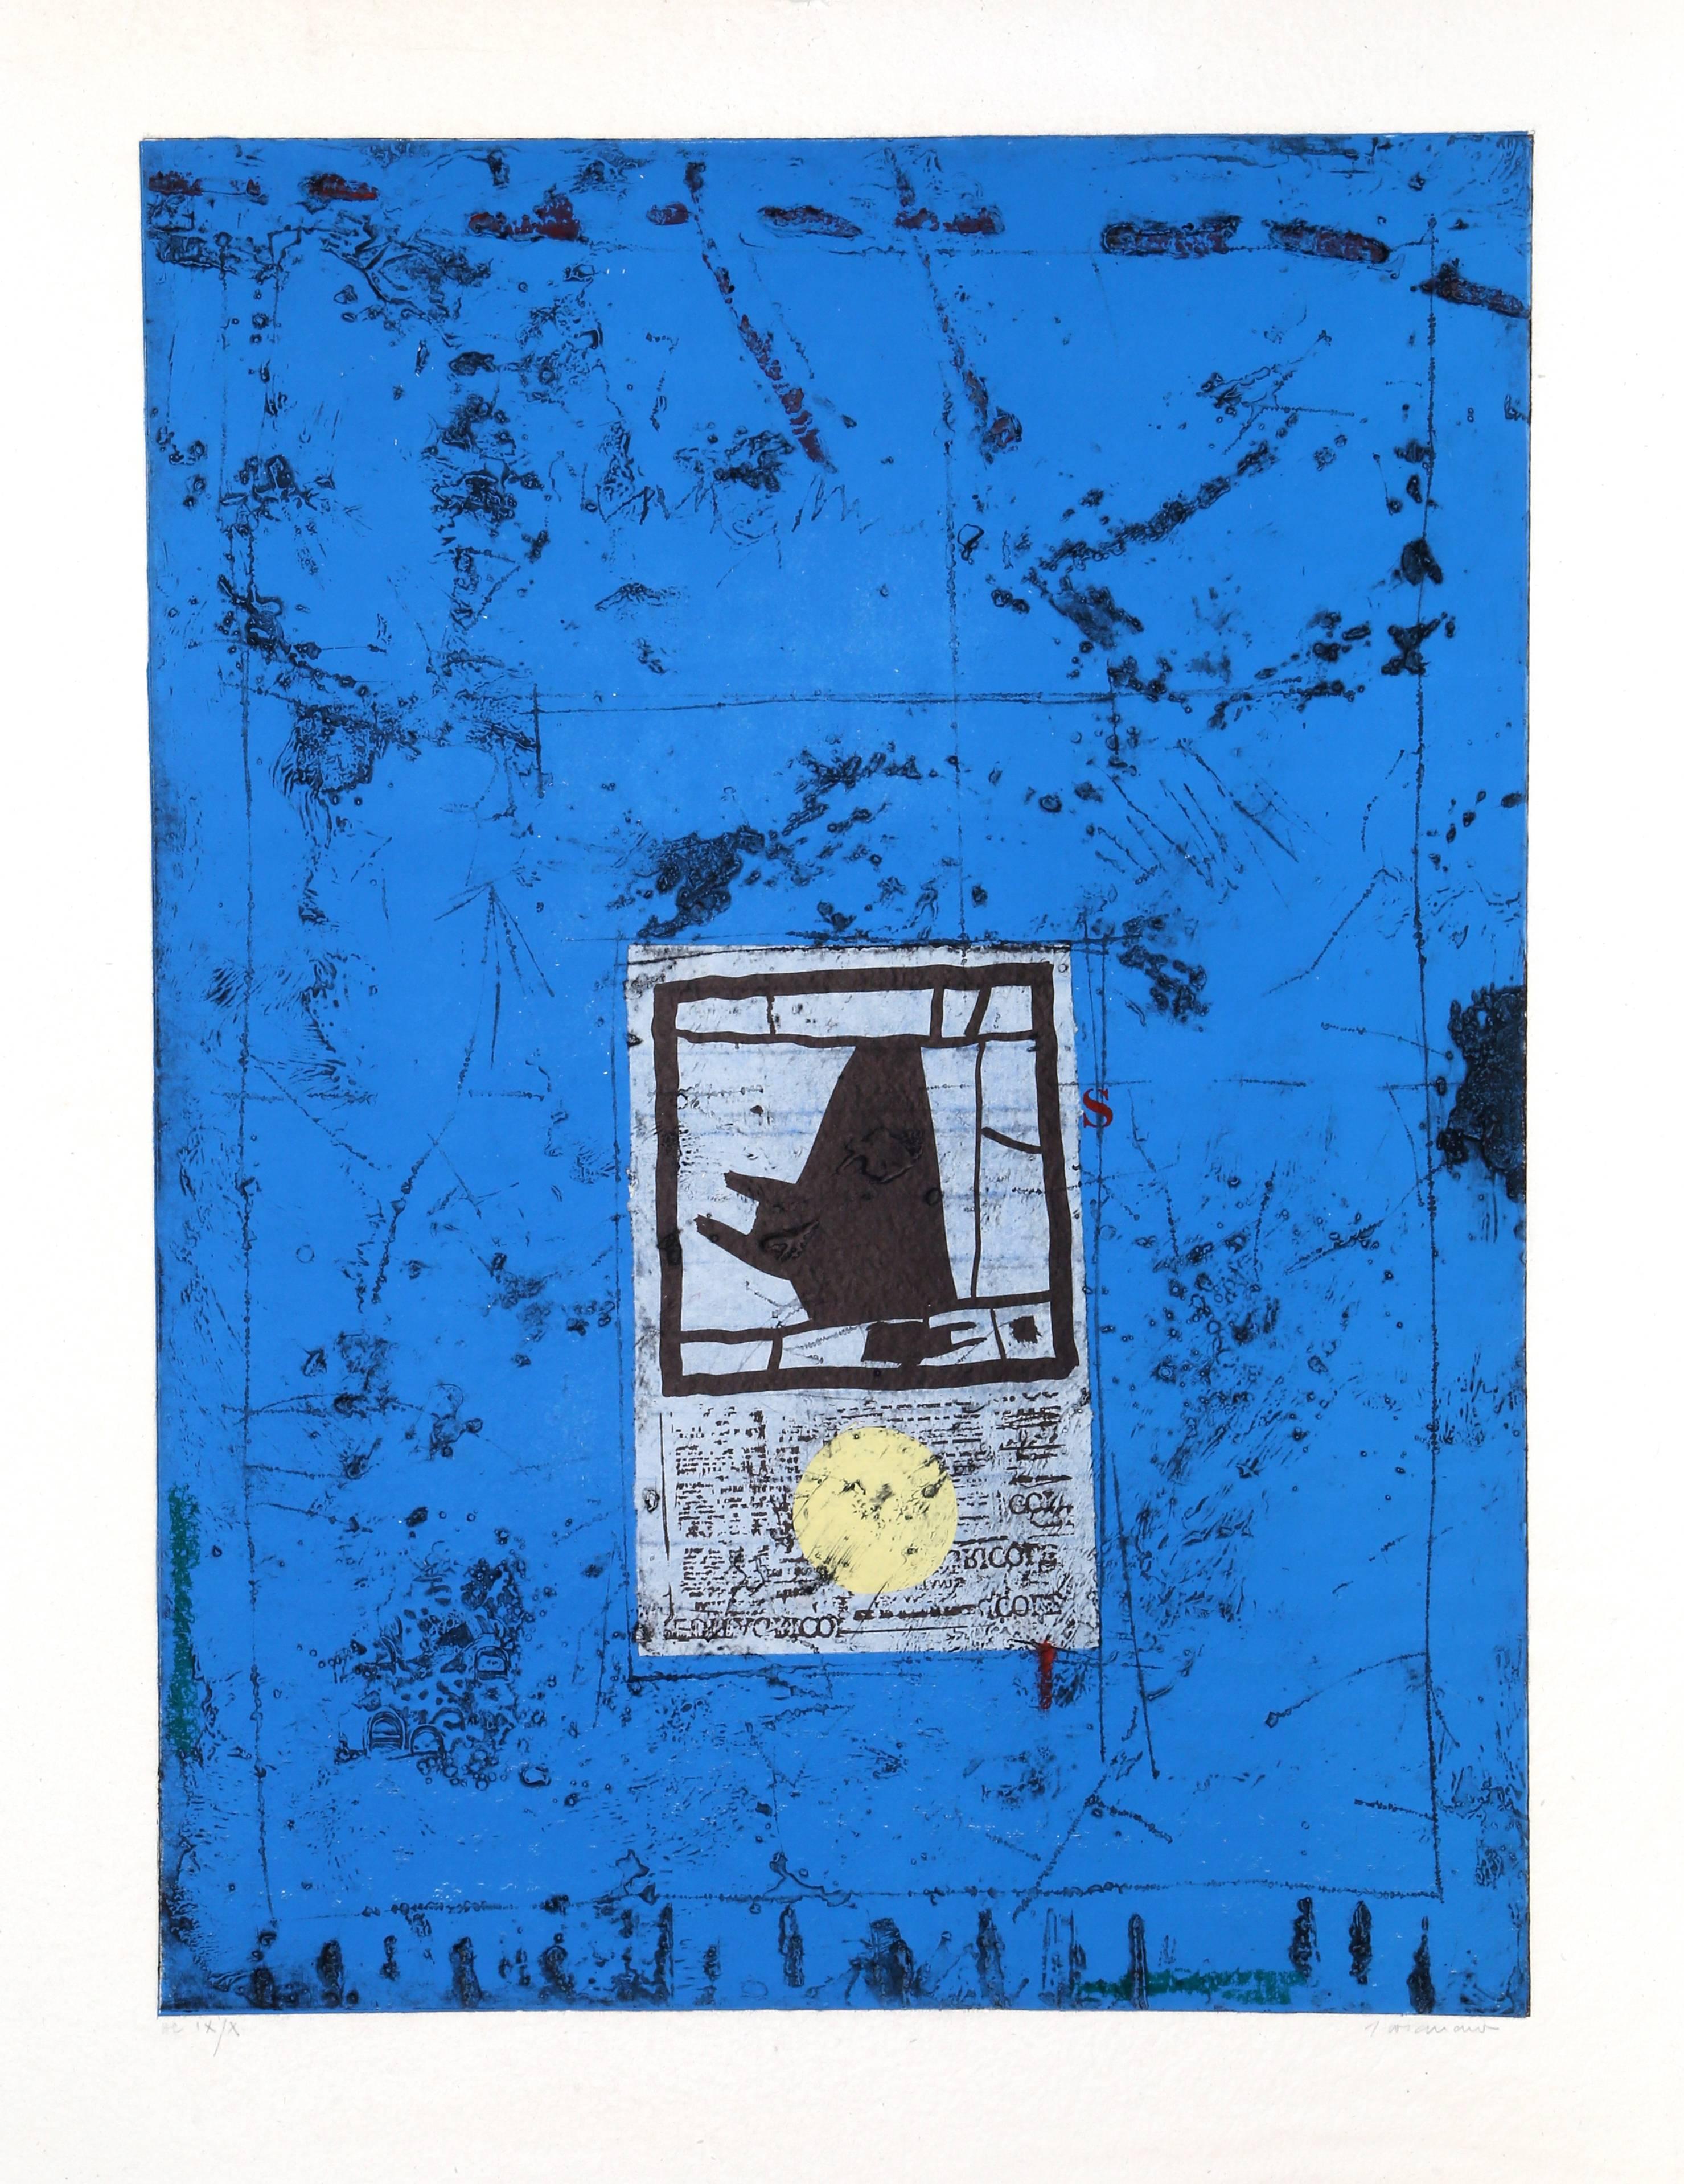 James Coignard Abstract Print - Introduction Sur Bleu